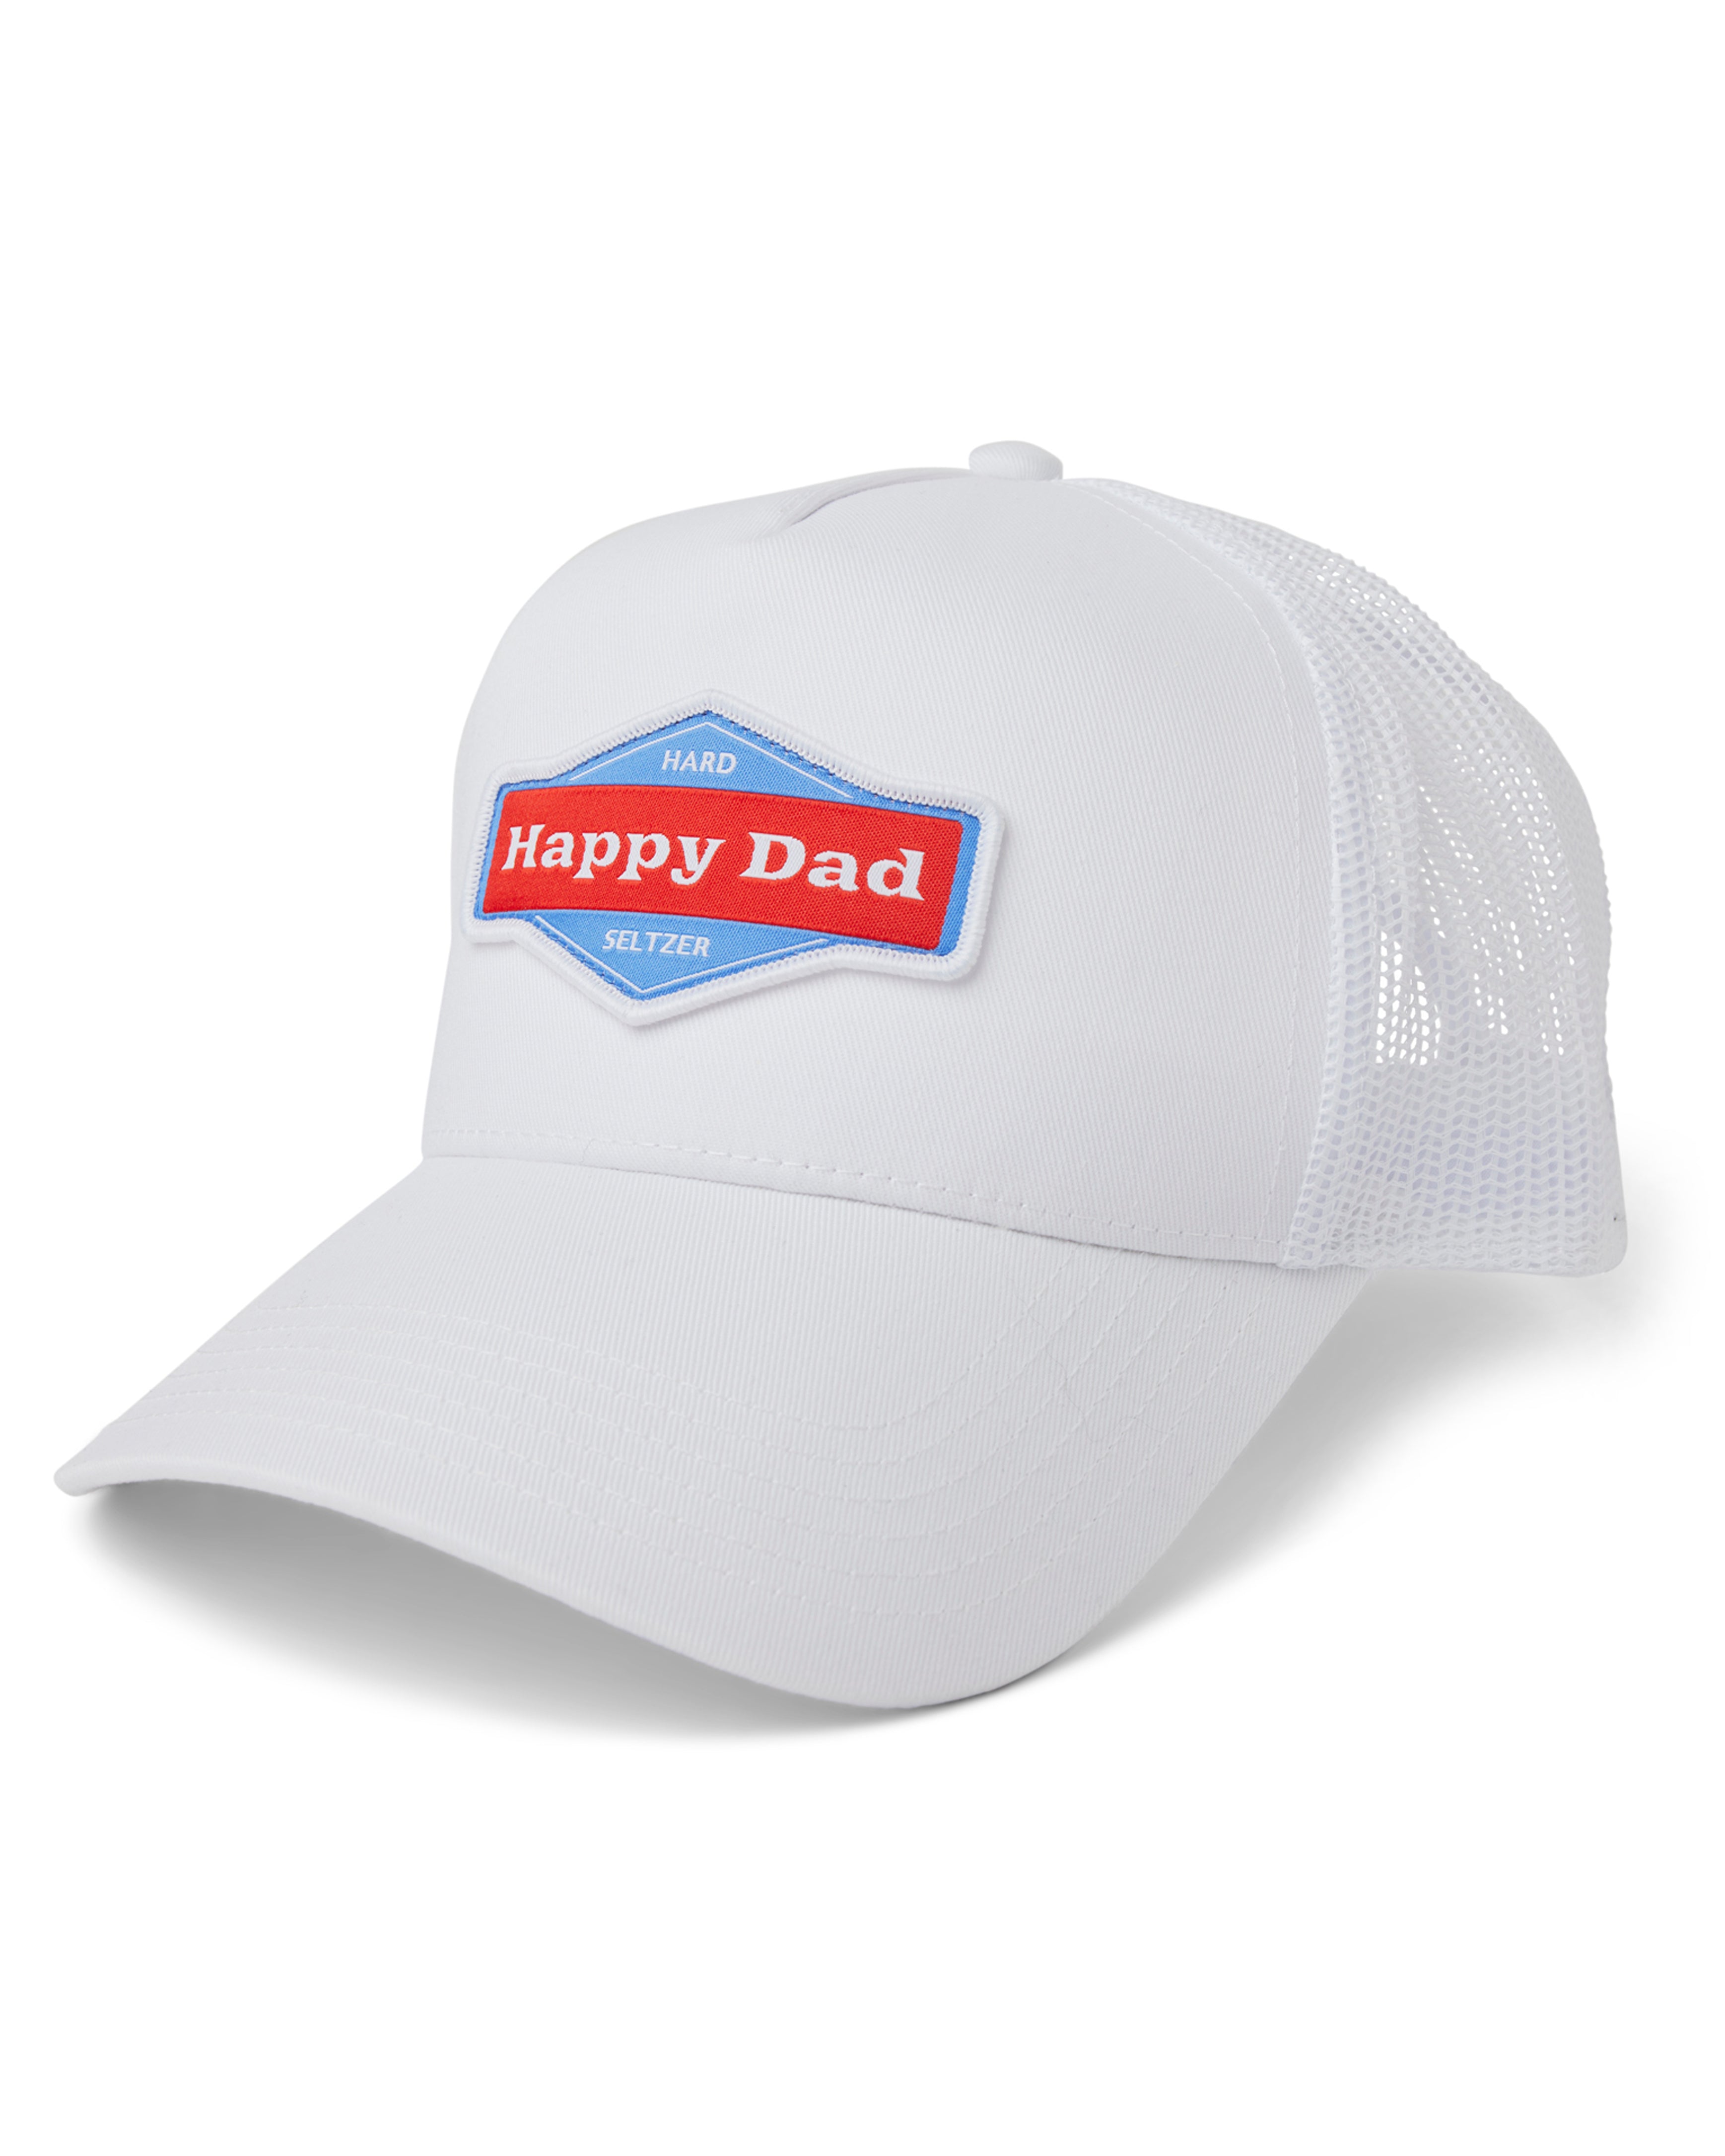 Happy Dad Trucker Hat (White)